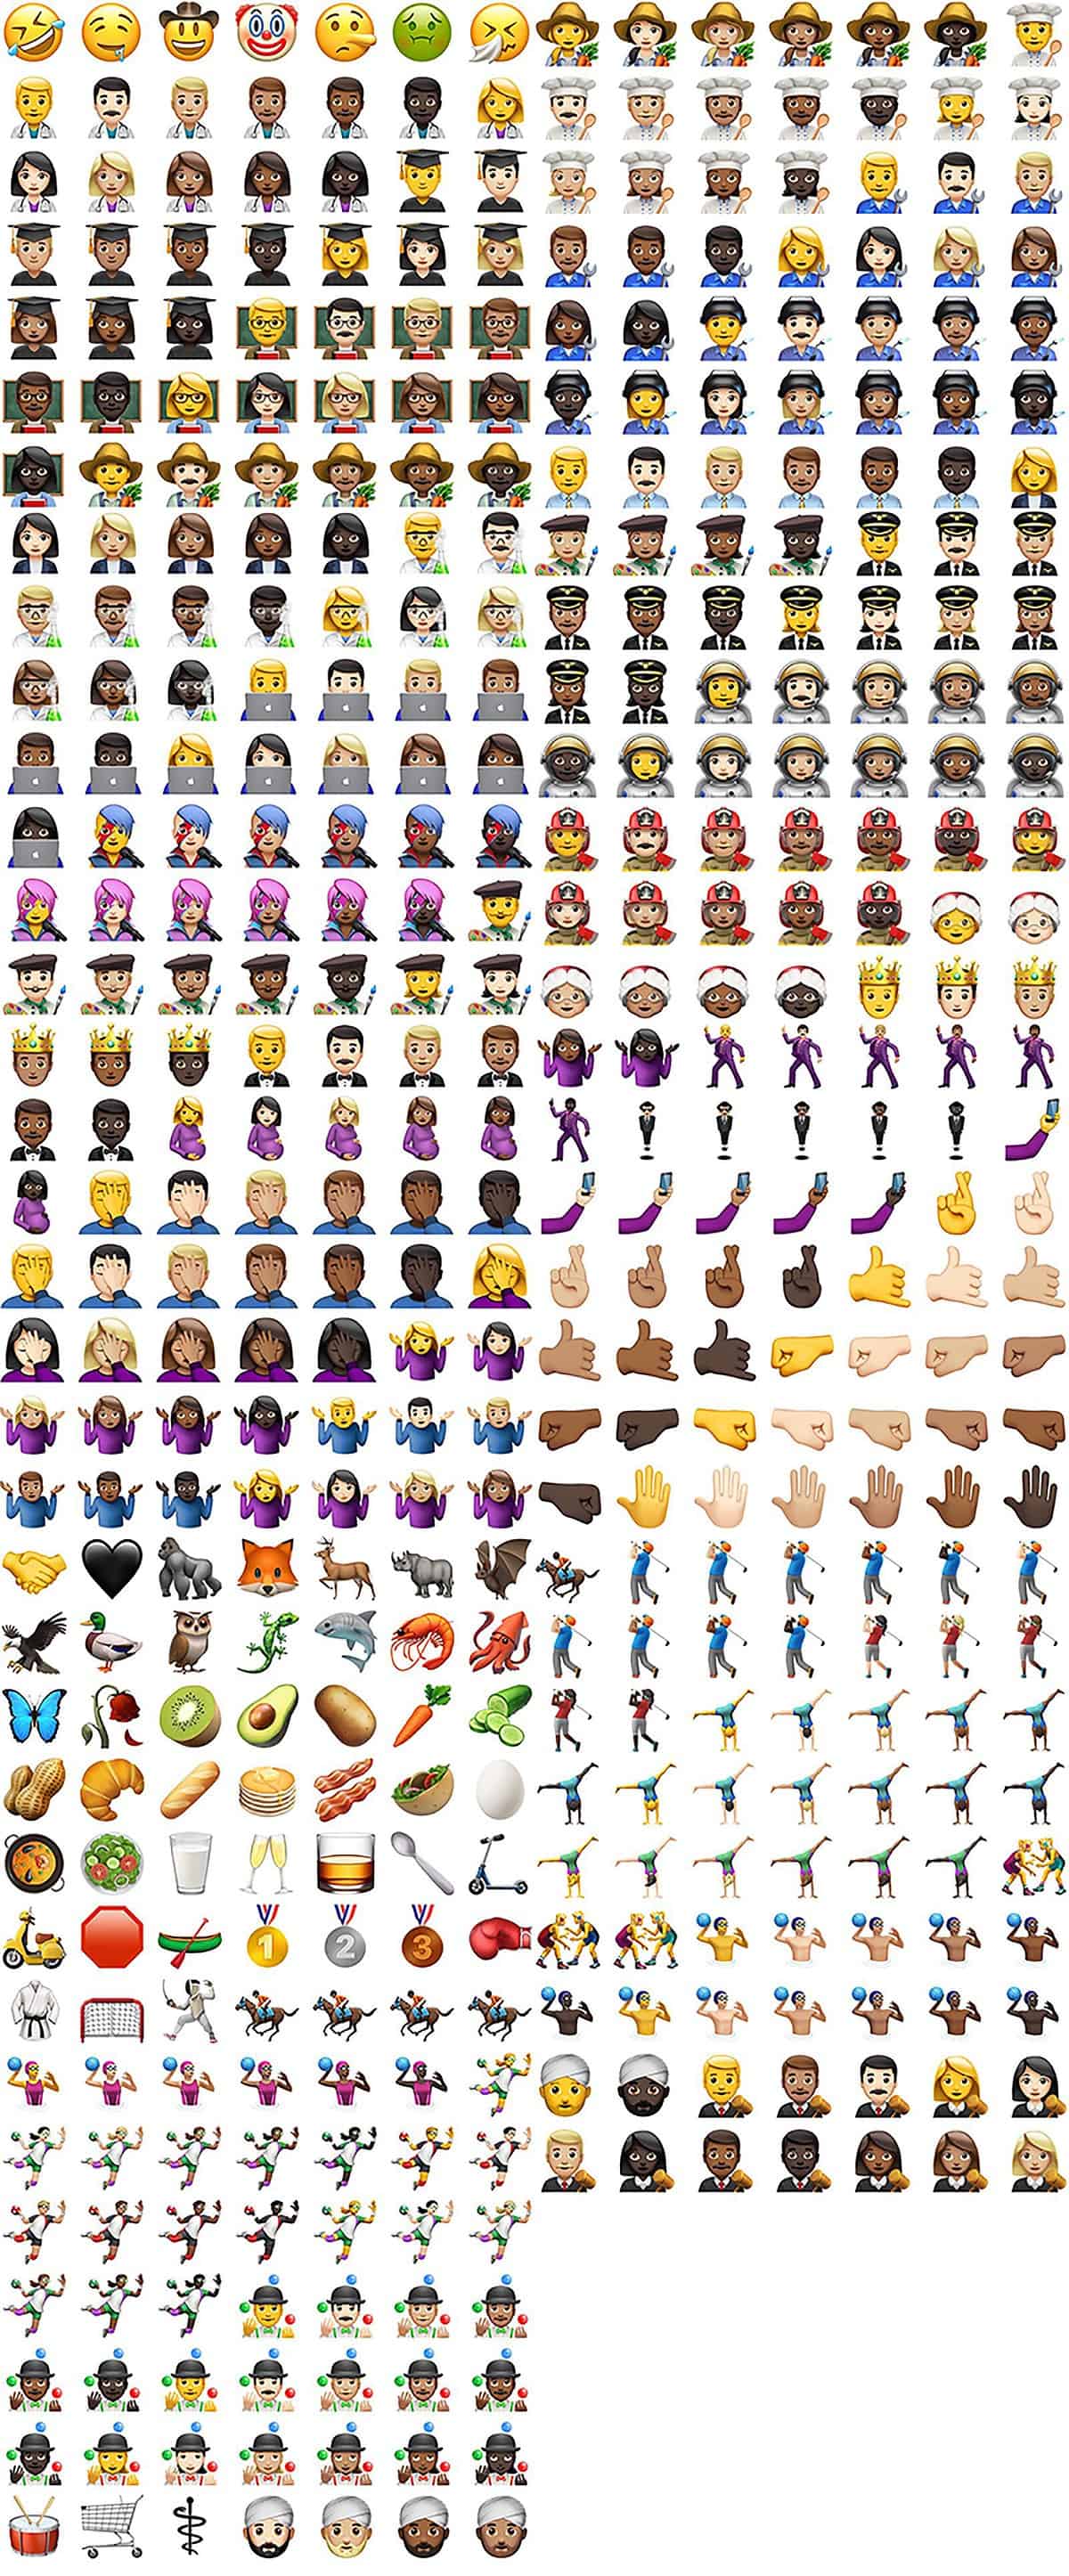 New ios emoji